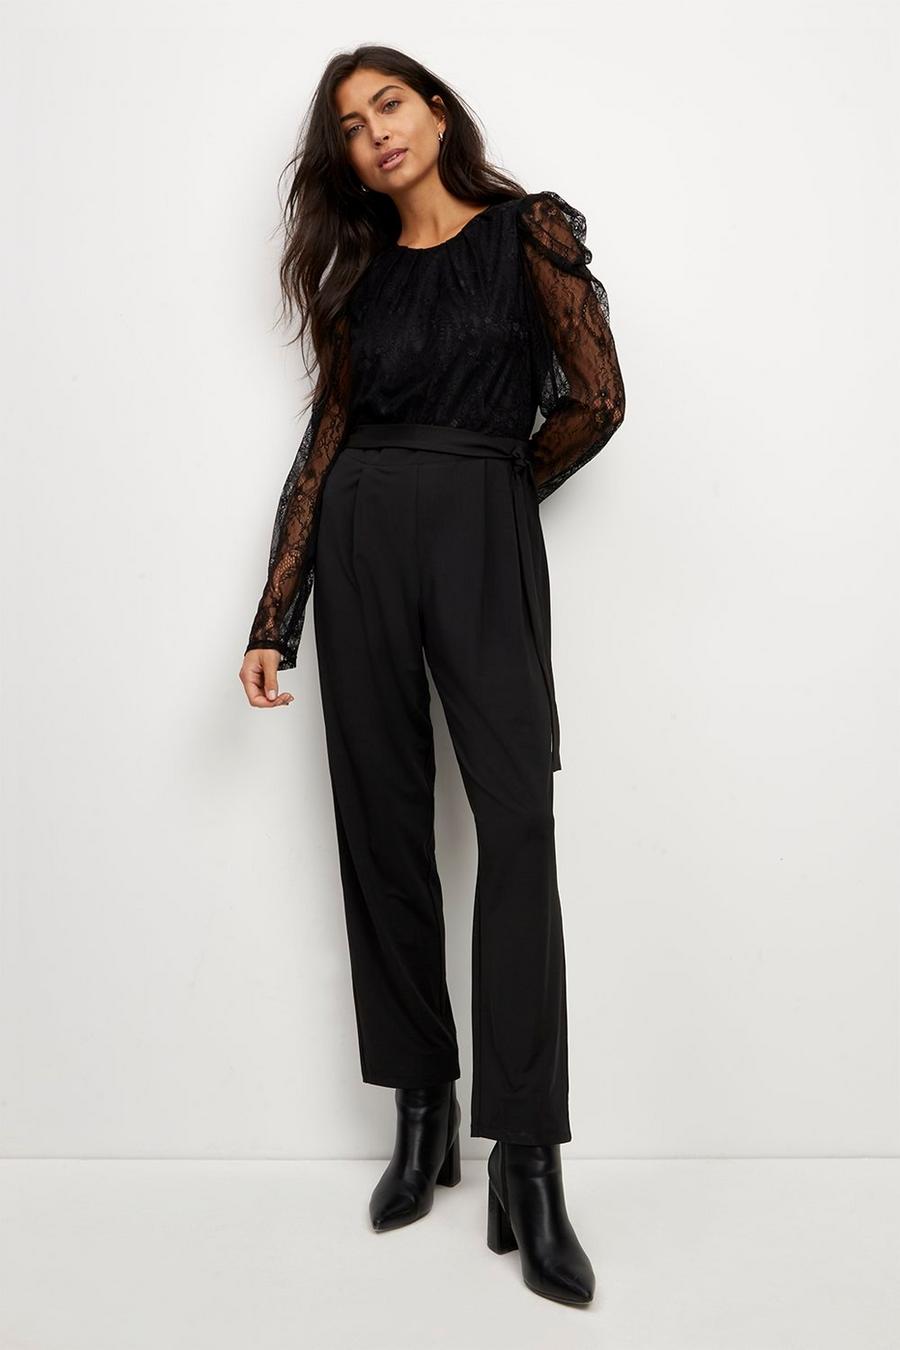 Black Lace Jersey Jumpsuit